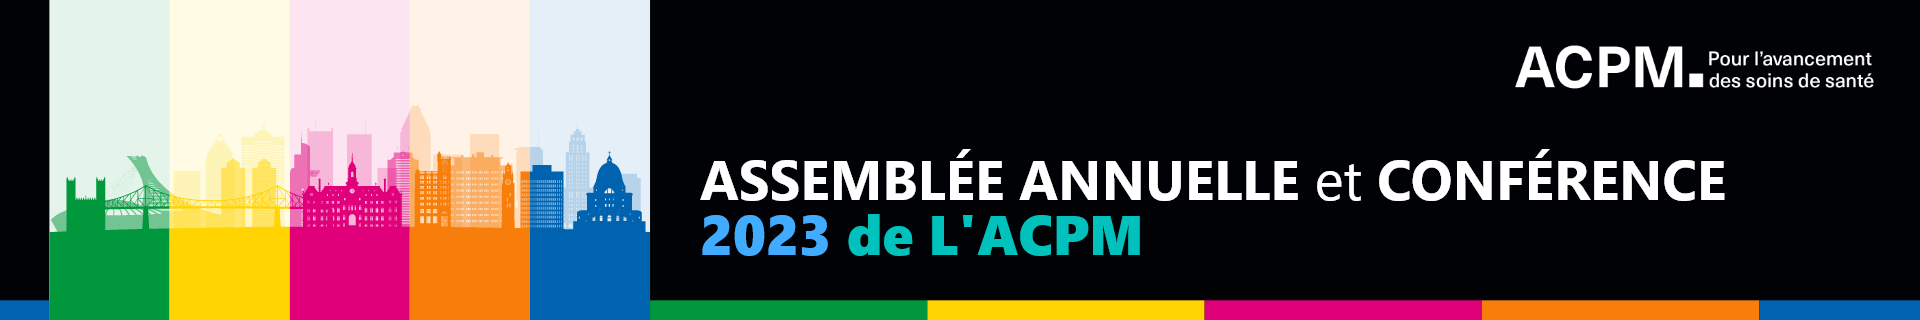 Assemblée annuelle et conférence 2023 de l’ACPM